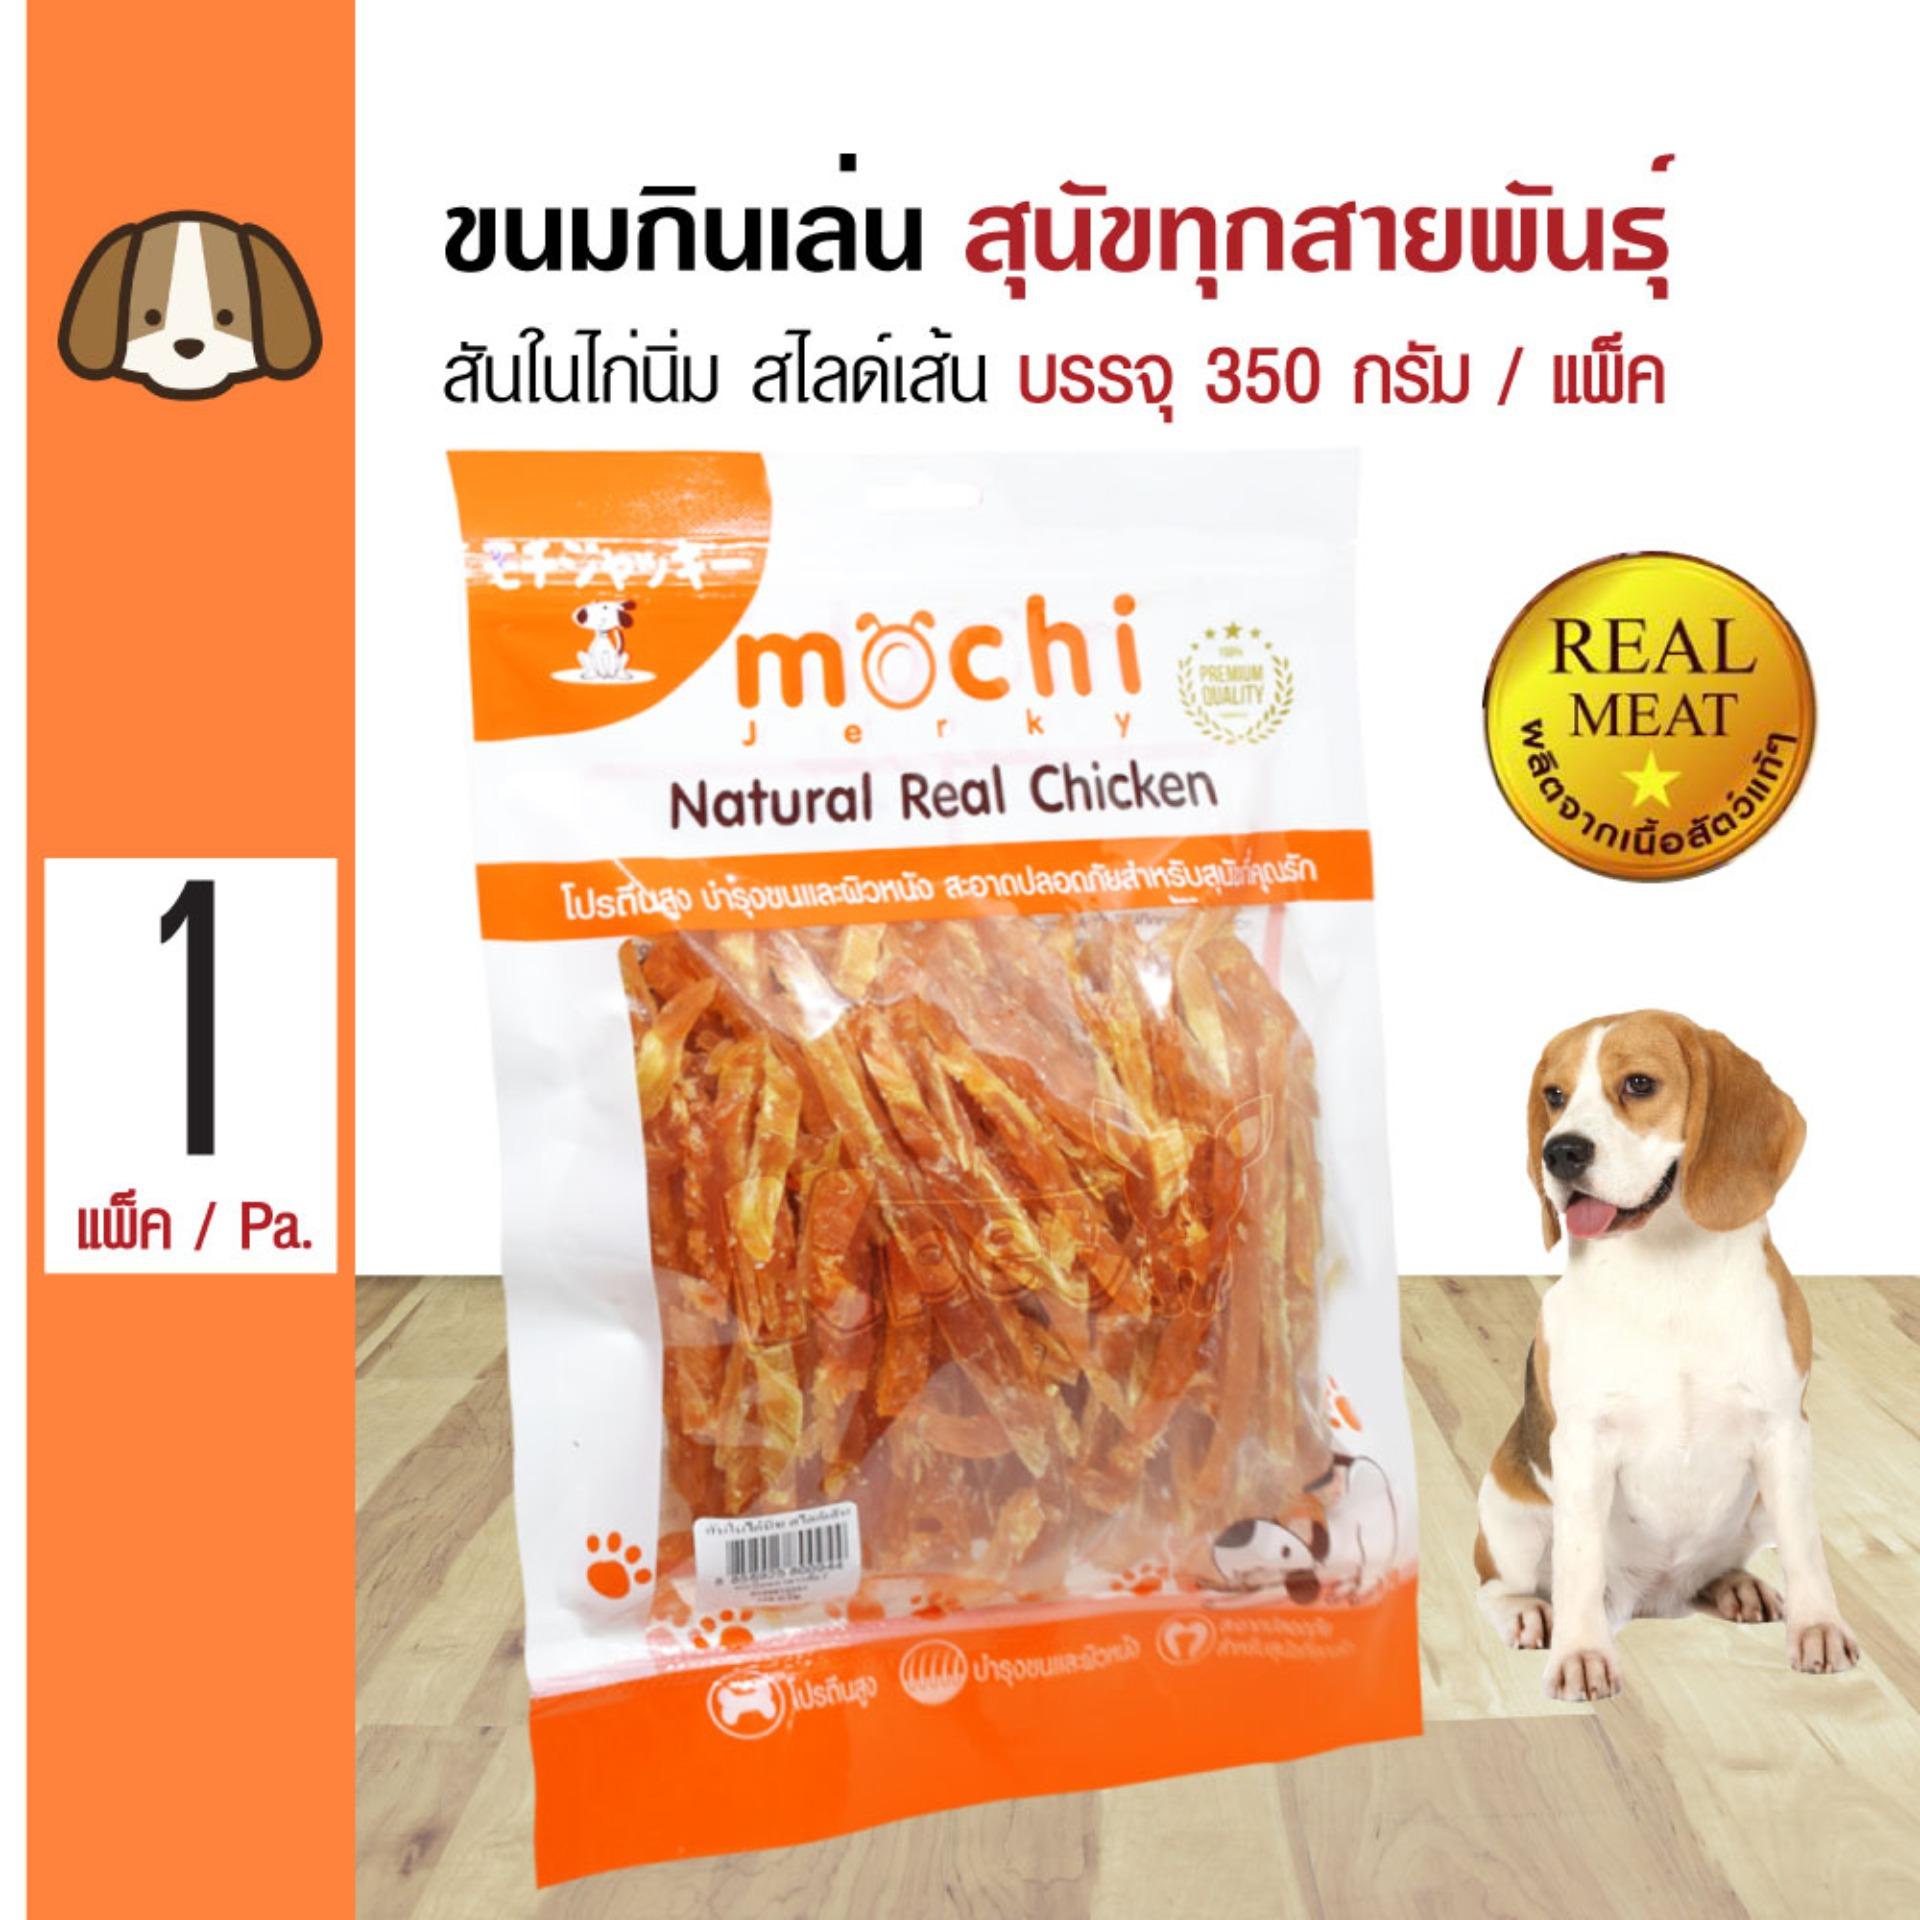 Mochi Jerky Snack ขนมสุนัข สันในไก่นิ่ม สไลด์เส้น กินง่าย สำหรับสุนัข 4 เดือนขึ้นไป (350 กรัม/แพ็ค)